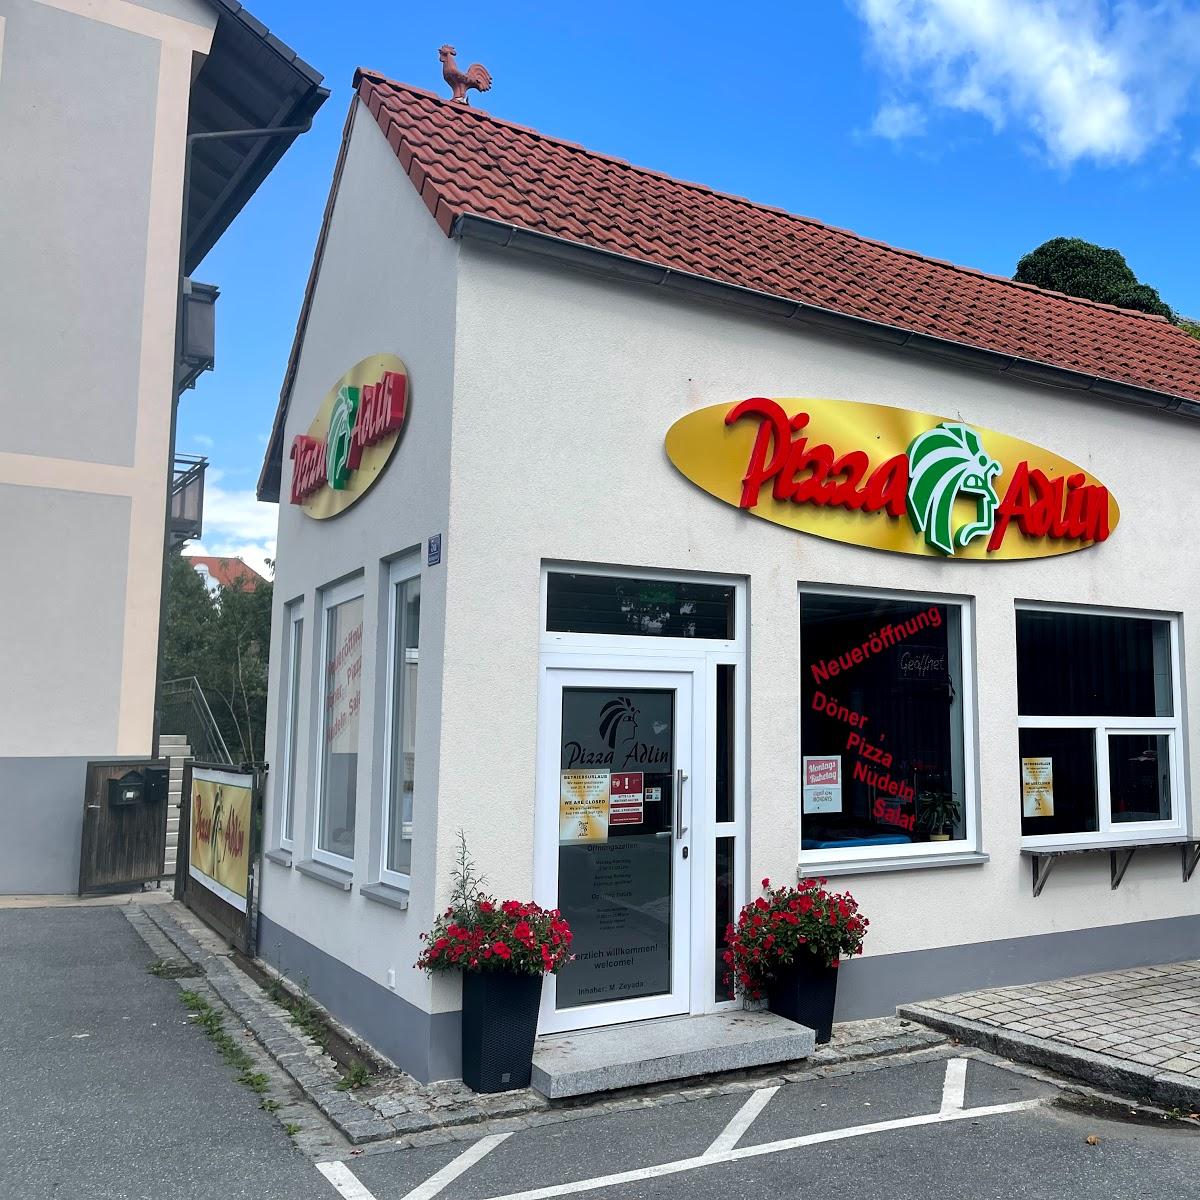 Restaurant "Pizza Adlin" in Grafenwöhr